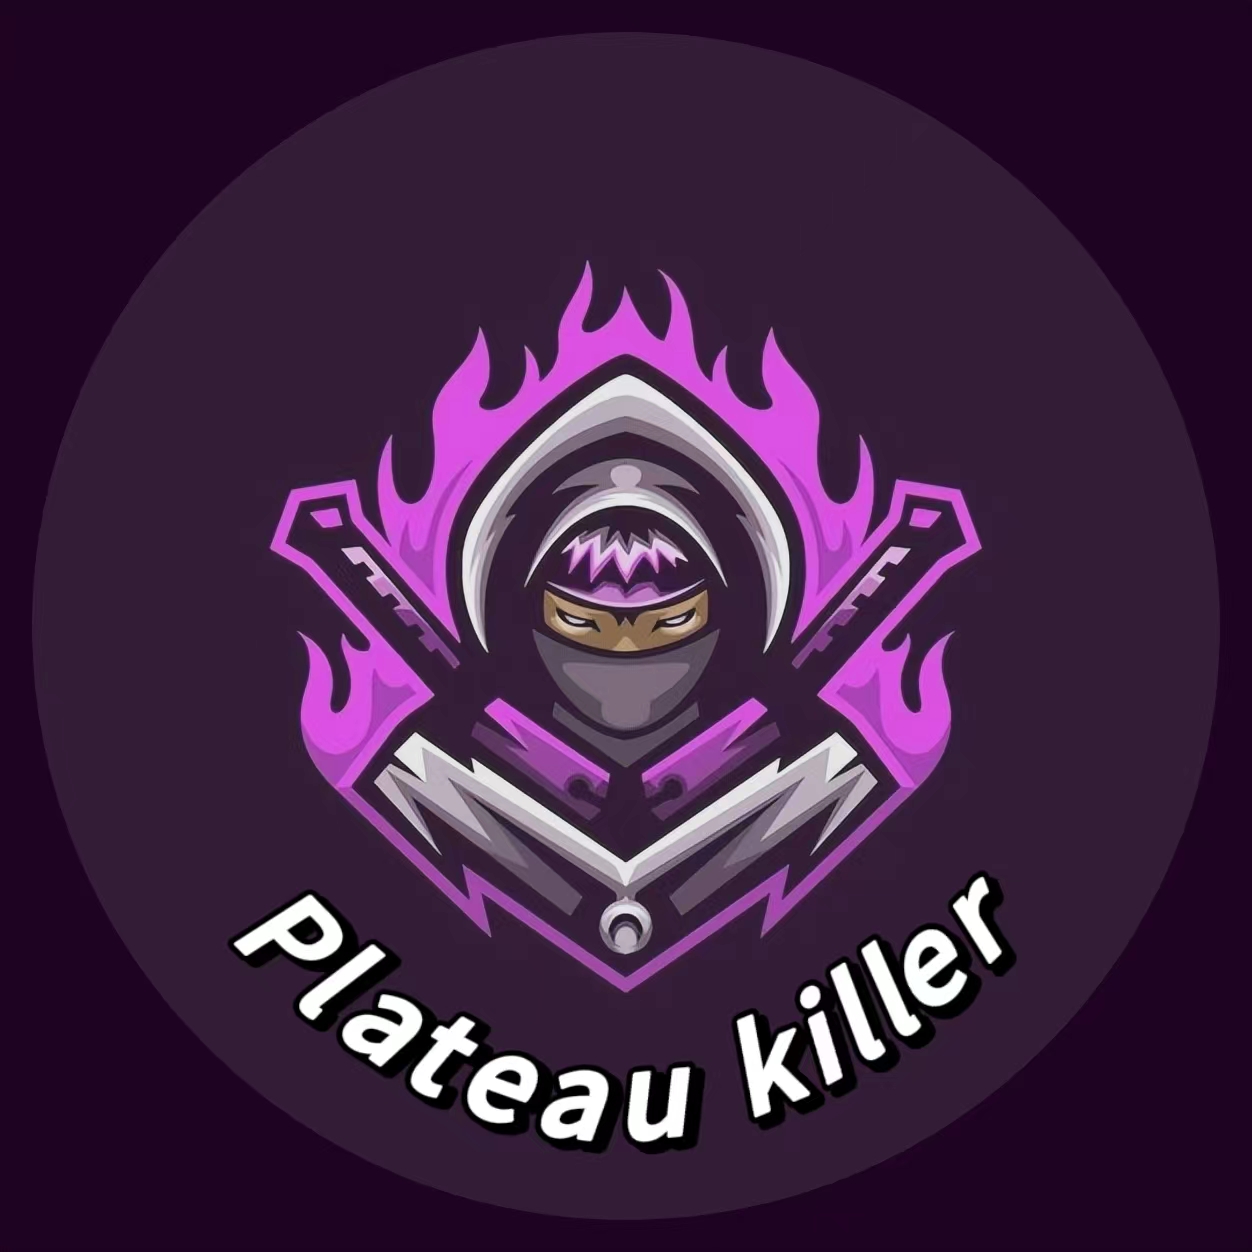 Plateau killer